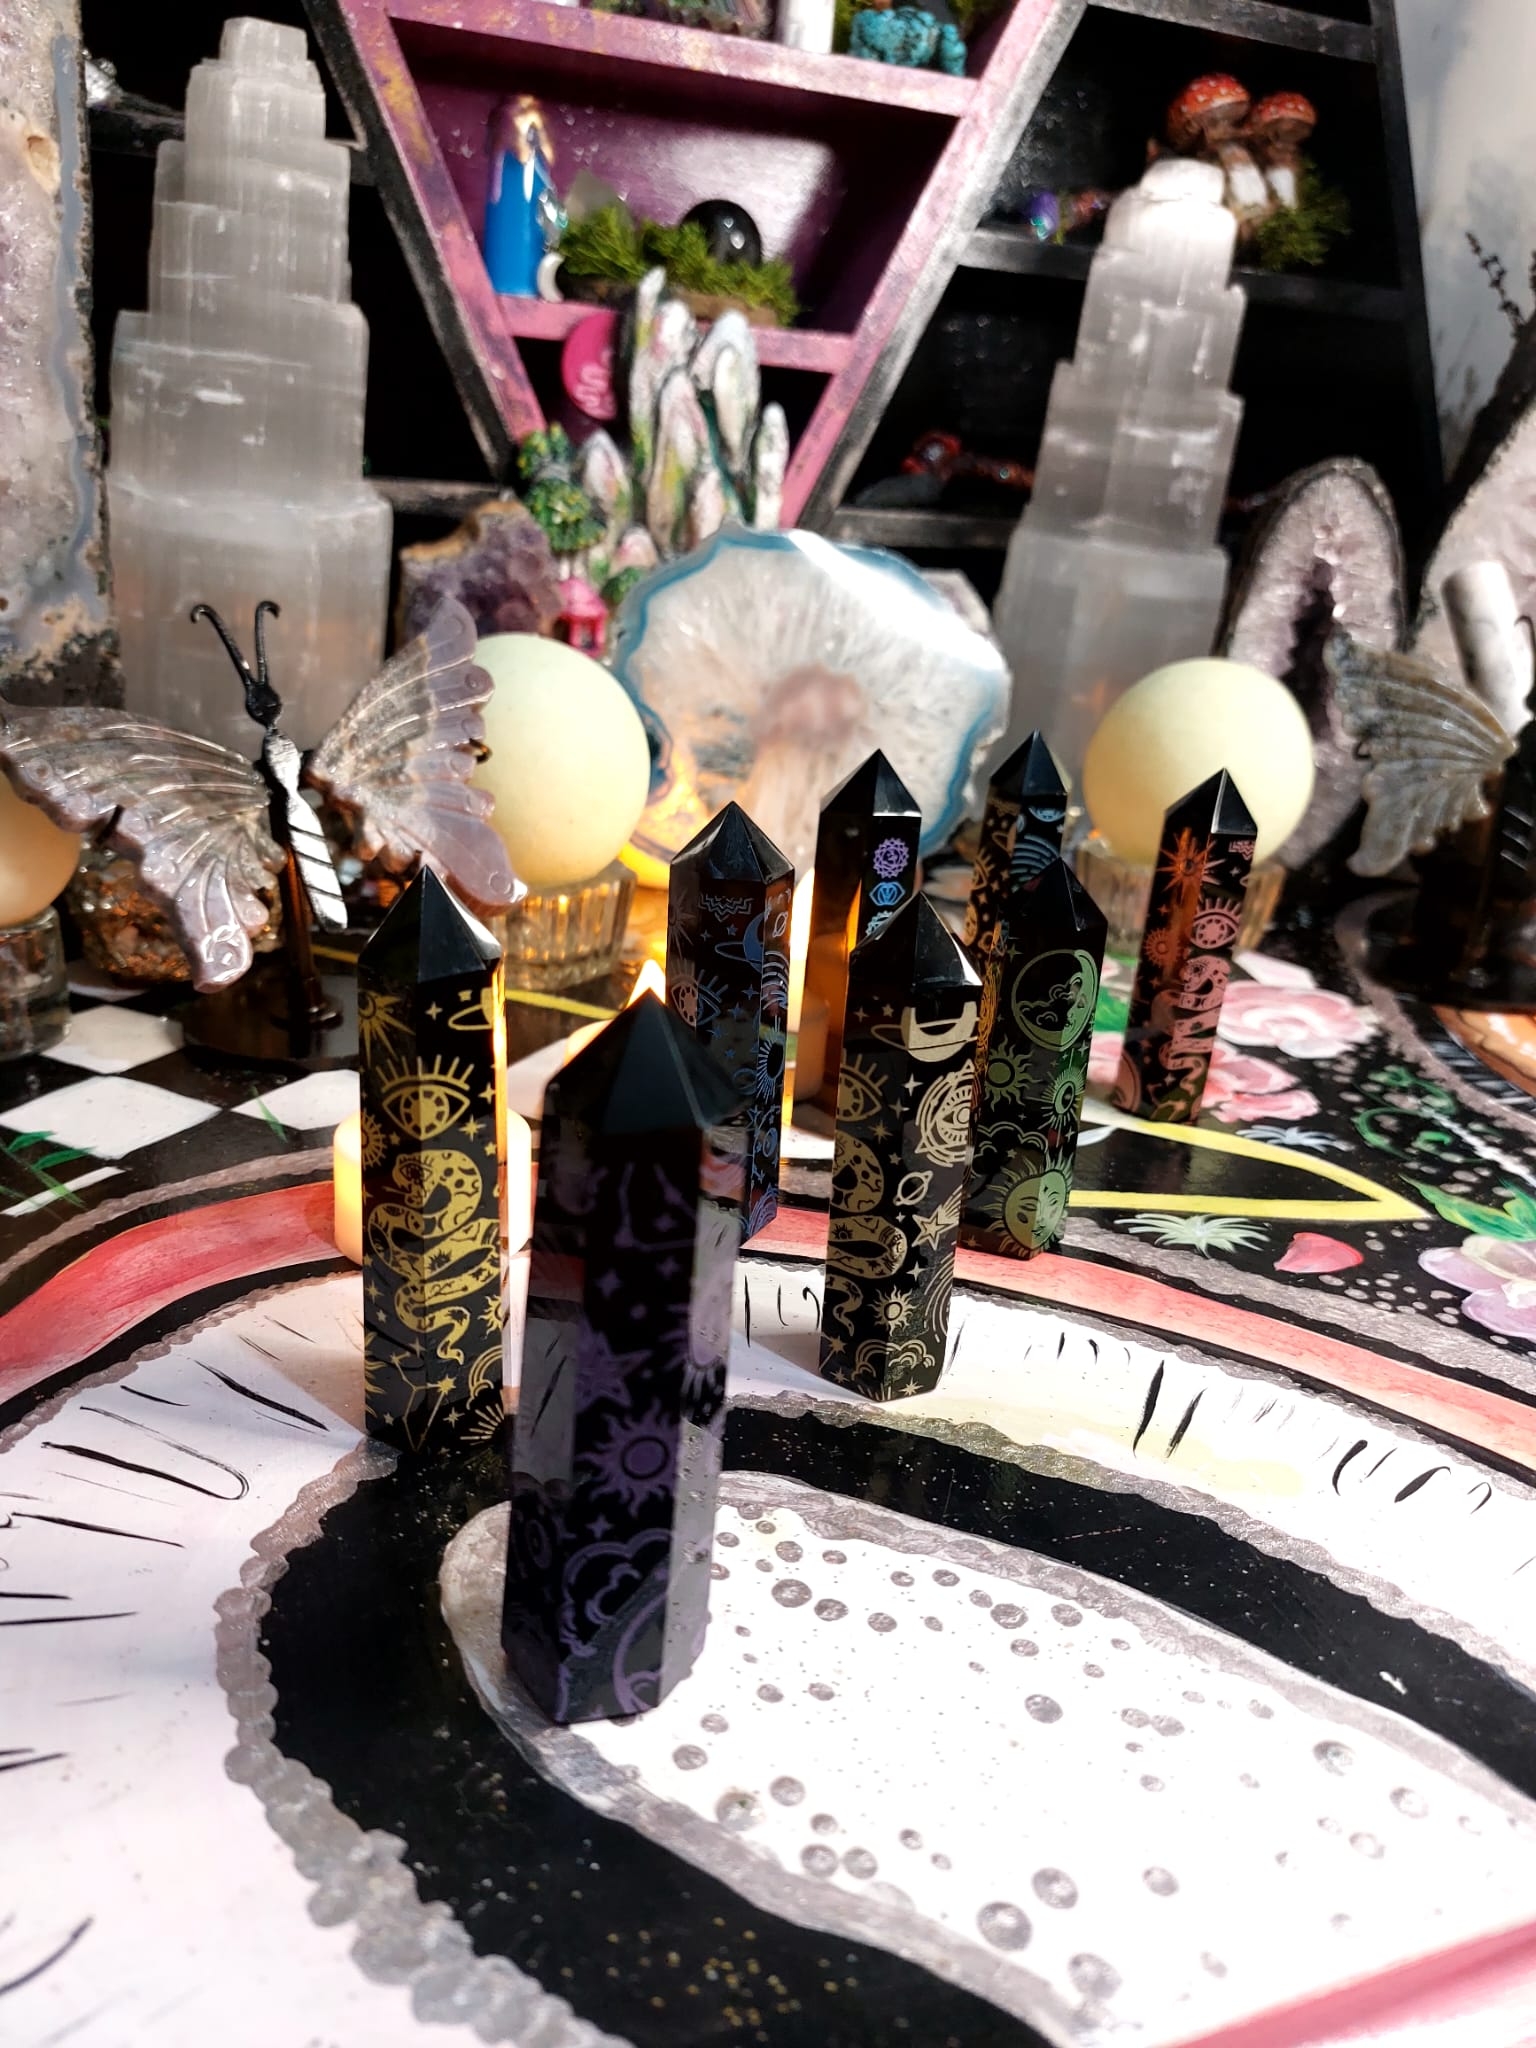 Özel Kutusunda 8’Li Obsidyen Spiritüel Çakra Obelisk Set